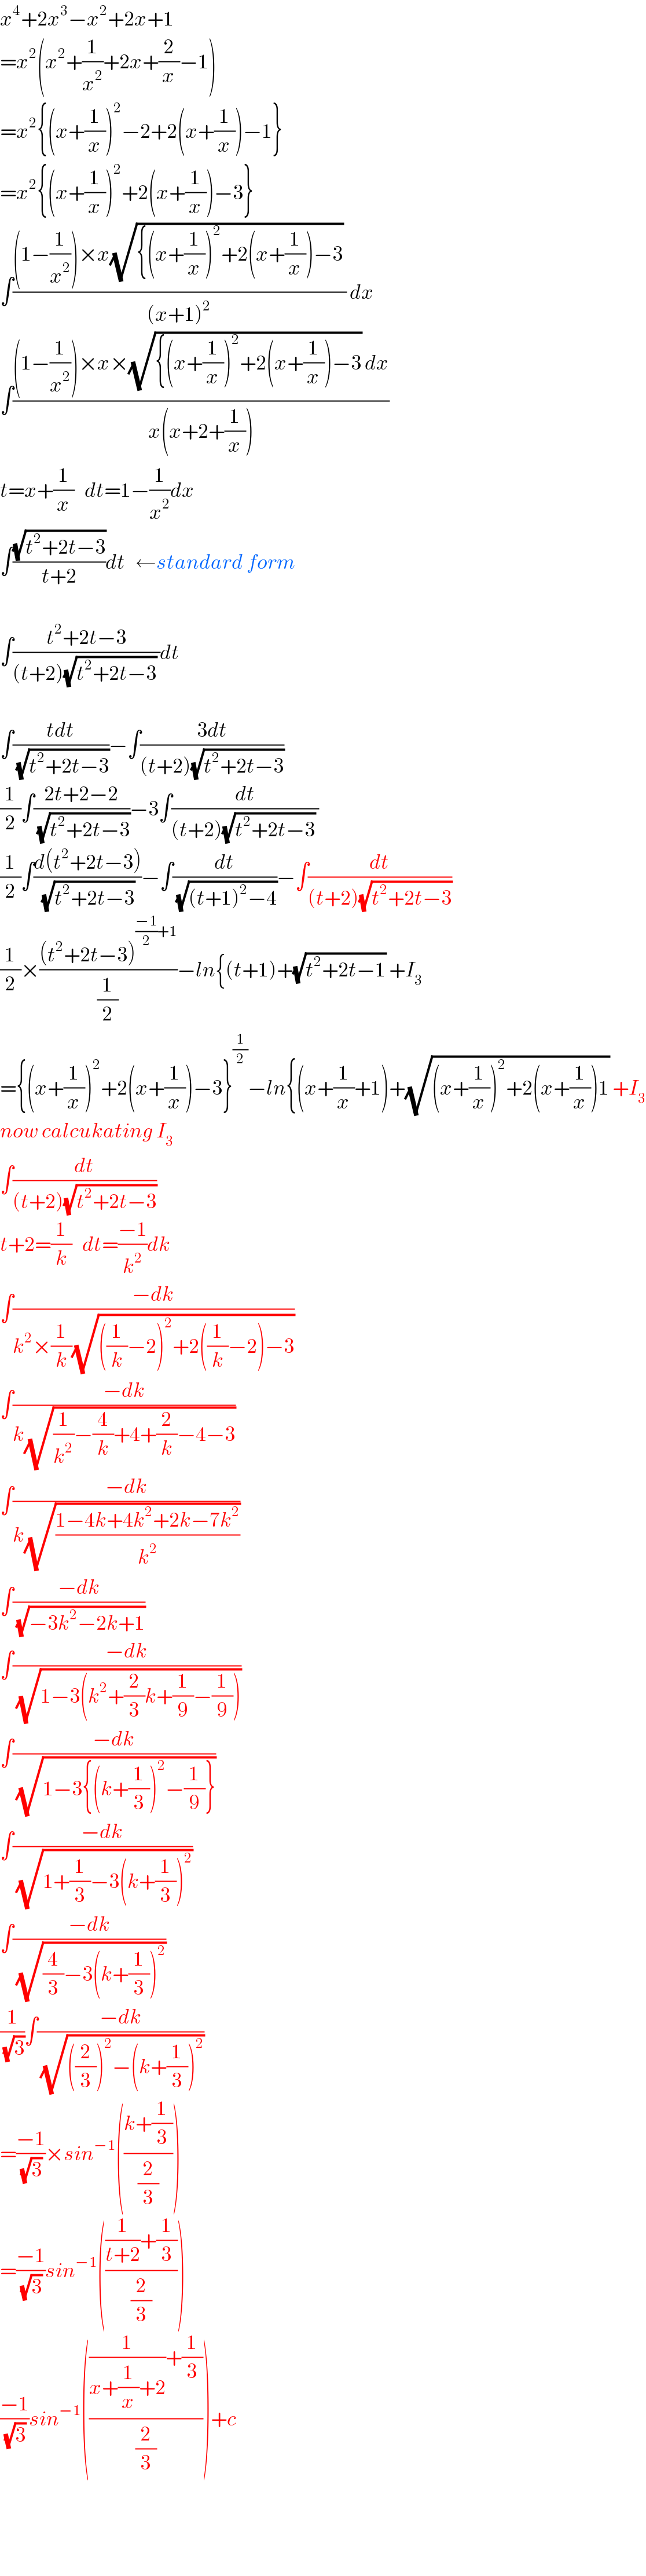 x^4 +2x^3 −x^2 +2x+1  =x^2 (x^2 +(1/x^2 )+2x+(2/x)−1)  =x^2 {(x+(1/x))^2 −2+2(x+(1/x))−1}  =x^2 {(x+(1/x))^2 +2(x+(1/x))−3}  ∫(((1−(1/x^2 ))×x(√({(x+(1/x))^2 +2(x+(1/x))−3)) )/((x+1)^2 )) dx  ∫(((1−(1/x^2 ))×x×(√({(x+(1/x))^2 +2(x+(1/x))−3)) dx)/(x(x+2+(1/x))))  t=x+(1/x)   dt=1−(1/x^2 )dx  ∫((√(t^2 +2t−3))/(t+2))dt   ←standard form     ∫((t^2 +2t−3)/((t+2)(√(t^2 +2t−3)) ))dt    ∫((tdt)/(√(t^2 +2t−3)))−∫((3dt)/((t+2)(√(t^2 +2t−3))))  (1/2)∫((2t+2−2)/(√(t^2 +2t−3)))−3∫(dt/((t+2)(√(t^2 +2t−3)) ))  (1/2)∫((d(t^2 +2t−3))/(√(t^2 +2t−3)))−∫(dt/(√((t+1)^2 −4)))−∫(dt/((t+2)(√(t^2 +2t−3))))  (1/2)×(((t^2 +2t−3)^(((−1)/2)+1) )/(1/2))−ln{(t+1)+(√(t^2 +2t−1)) +I_3   ={(x+(1/x))^2 +2(x+(1/x))−3}^(1/2) −ln{(x+(1/x)+1)+(√((x+(1/x))^2 +2(x+(1/x))1)) +I_3   now calcukating I_3   ∫(dt/((t+2)(√(t^2 +2t−3))))  t+2=(1/k)   dt=((−1)/k^2 )dk  ∫((−dk)/(k^2 ×(1/k)(√(((1/k)−2)^2 +2((1/k)−2)−3))))  ∫((−dk)/(k(√((1/k^2 )−(4/k)+4+(2/k)−4−3))))  ∫((−dk)/(k(√((1−4k+4k^2 +2k−7k^2 )/k^2 ))))  ∫((−dk)/(√(−3k^2 −2k+1)))  ∫((−dk)/(√(1−3(k^2 +(2/3)k+(1/9)−(1/9)))))  ∫((−dk)/(√(1−3{(k+(1/3))^2 −(1/9)})))  ∫((−dk)/(√(1+(1/3)−3(k+(1/3))^2 )))  ∫((−dk)/(√((4/3)−3(k+(1/3))^2 )))  (1/(√3))∫((−dk)/(√(((2/3))^2 −(k+(1/3))^2 )))  =((−1)/(√3))×sin^(−1) (((k+(1/3))/(2/3)))  =((−1)/(√3))sin^(−1) ((((1/(t+2))+(1/3))/(2/3)))  ((−1)/(√3))sin^(−1) ((((1/(x+(1/x)+2))+(1/3))/(2/3)))+c      